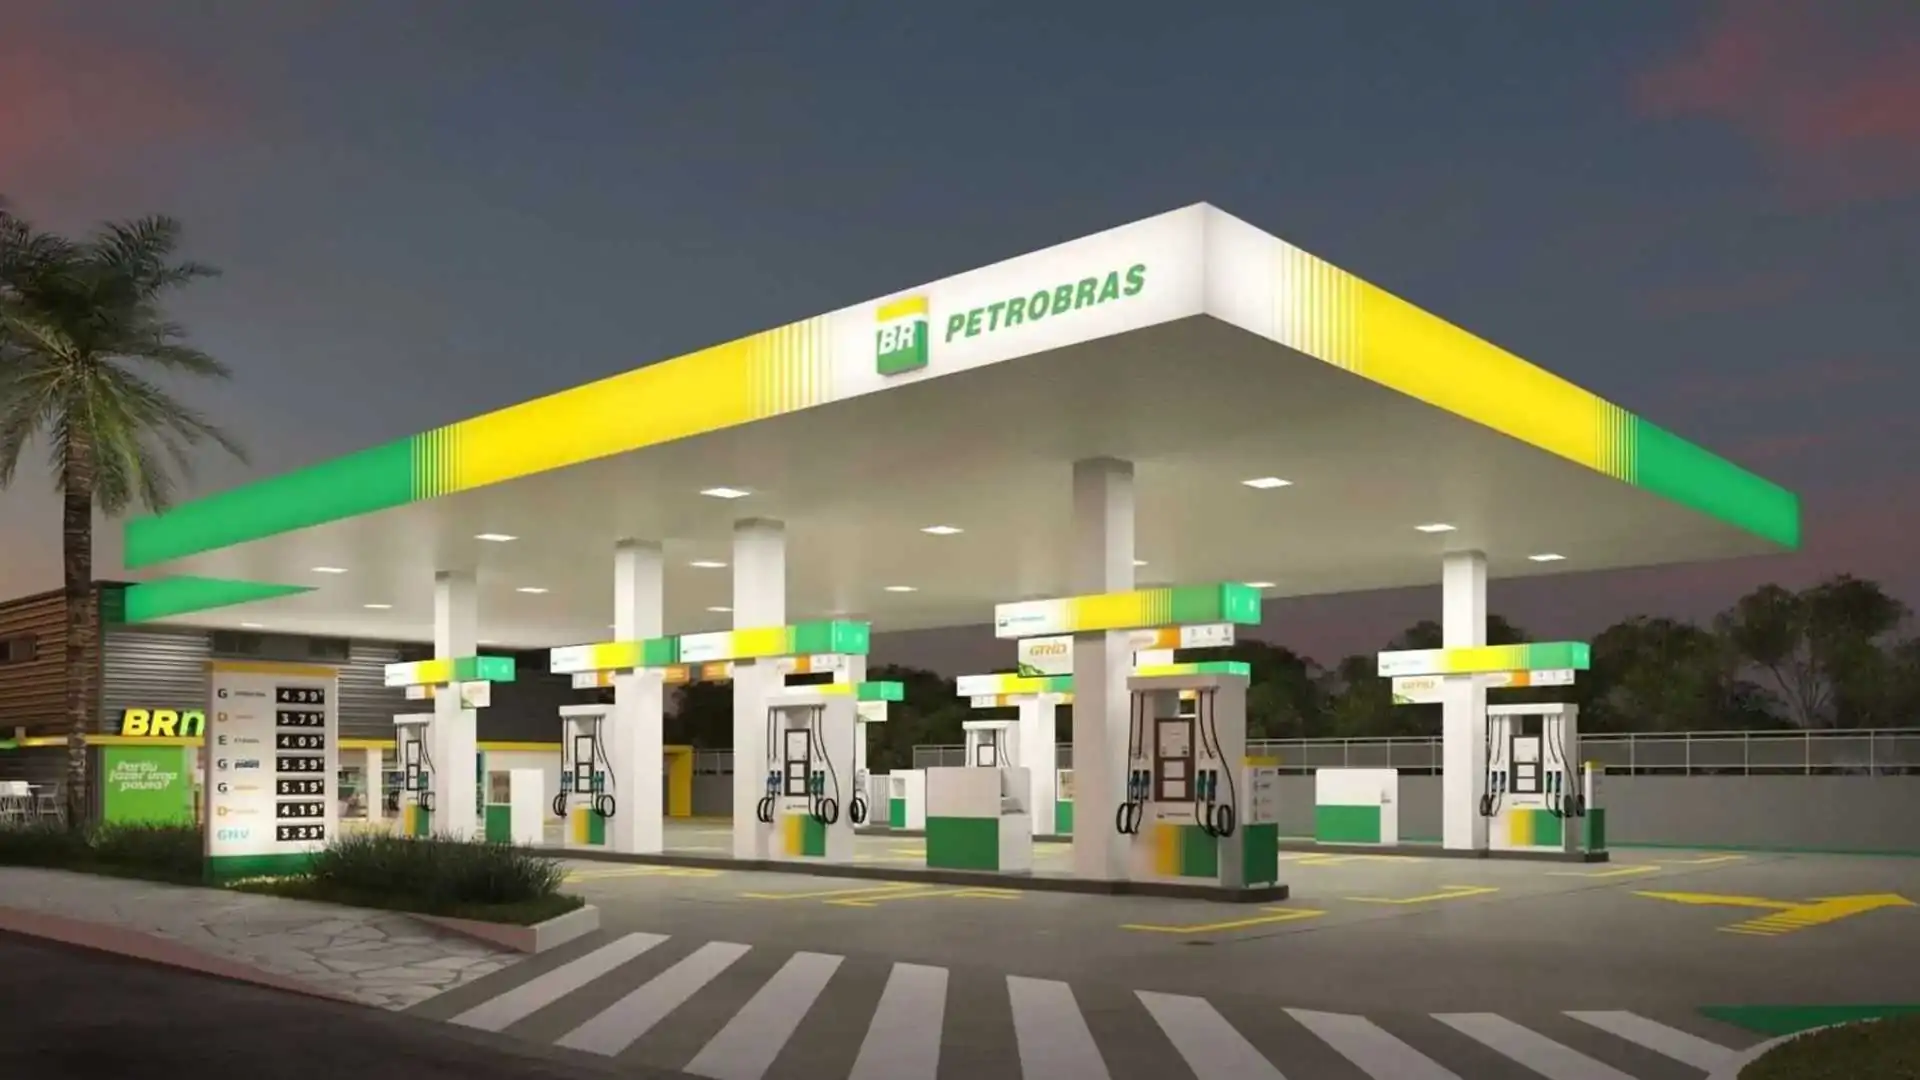 Petrobras anuncia que não vai renovar uso de marcas como "Postos Petrobras", "BR Aviation", "Podium" e "Grid" pela Vibra após 2029. Na imagem: Posto de combustíveis Petrobras fotografado à noite com as luzes acesas (Foto: Divulgação)